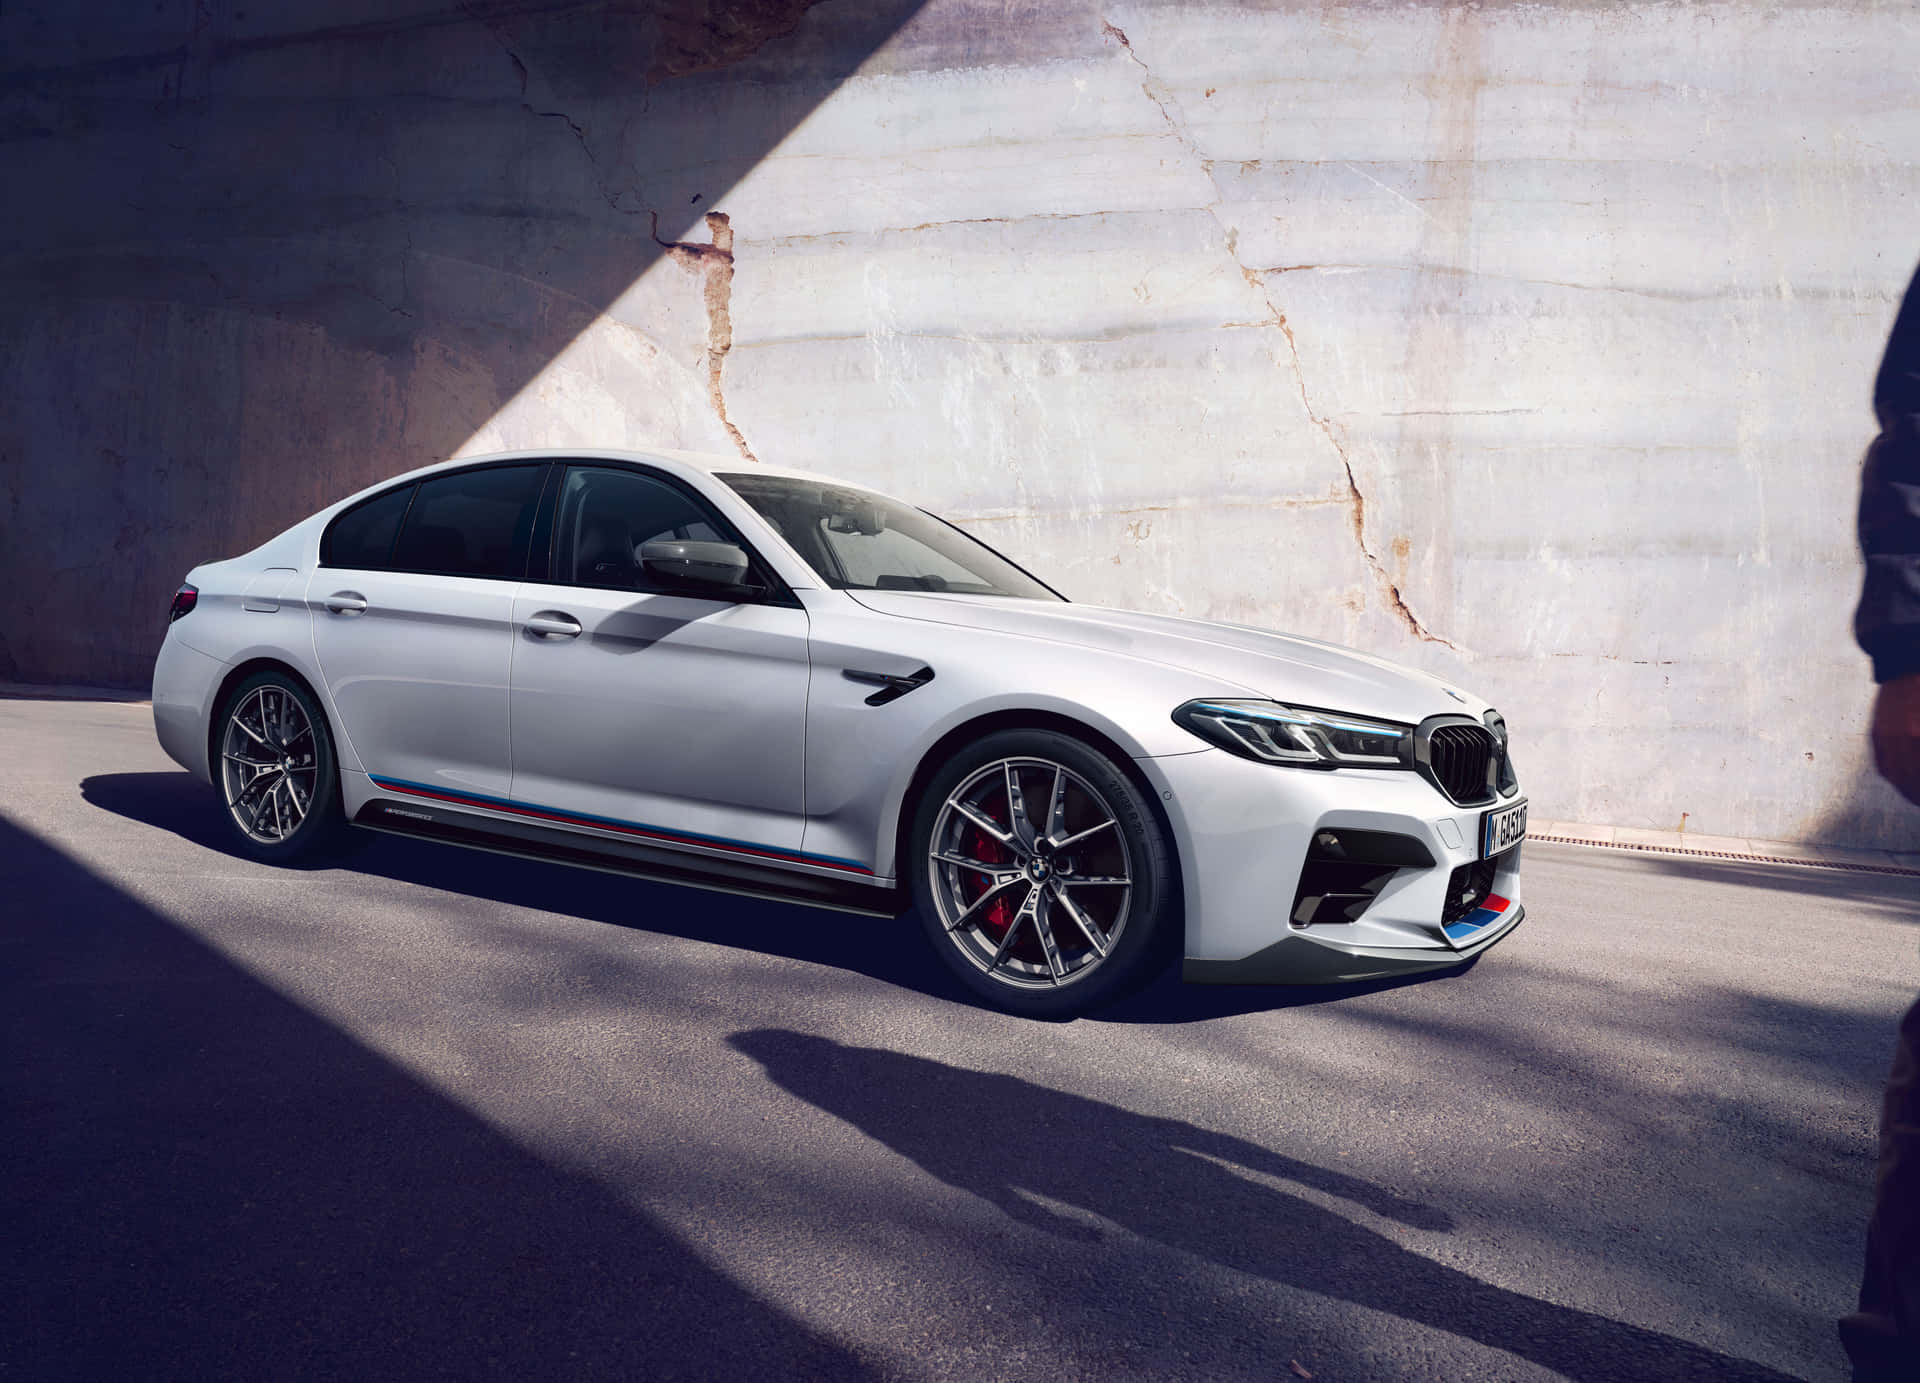 Luksus og magt findes sammen i BMW M5 baggrundsbillede. Wallpaper